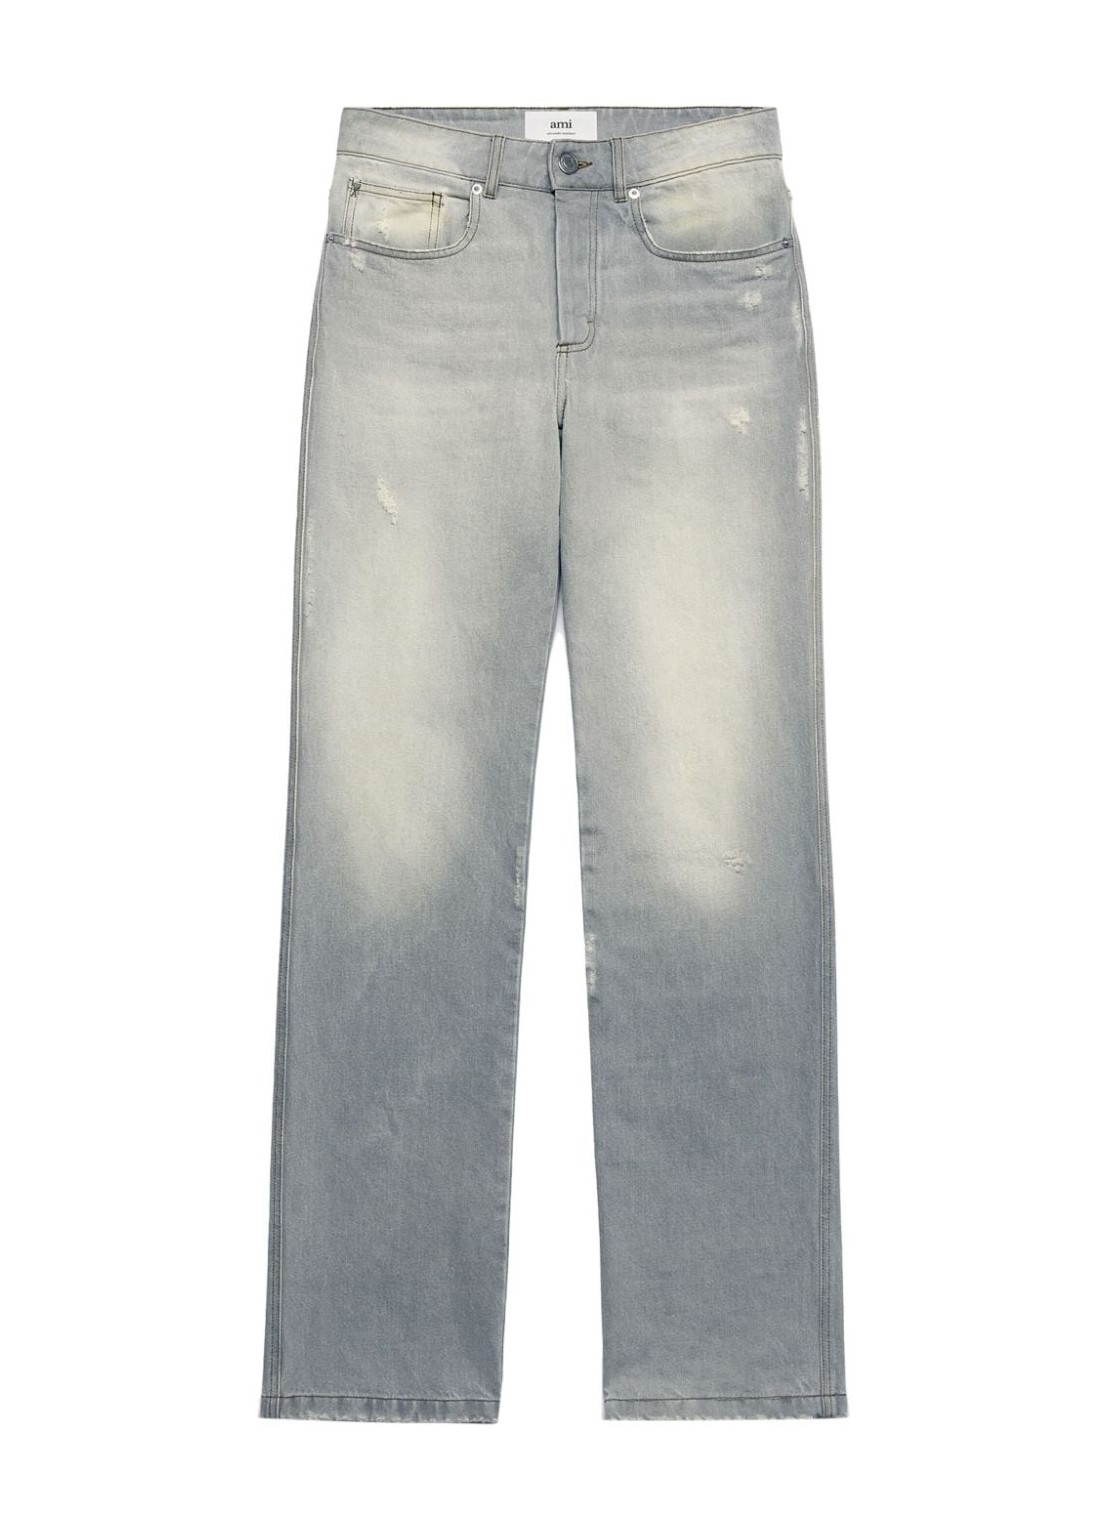 Pantalon jeans ami denim man straight fit jeans utr500de0019 0554 talla gris
 